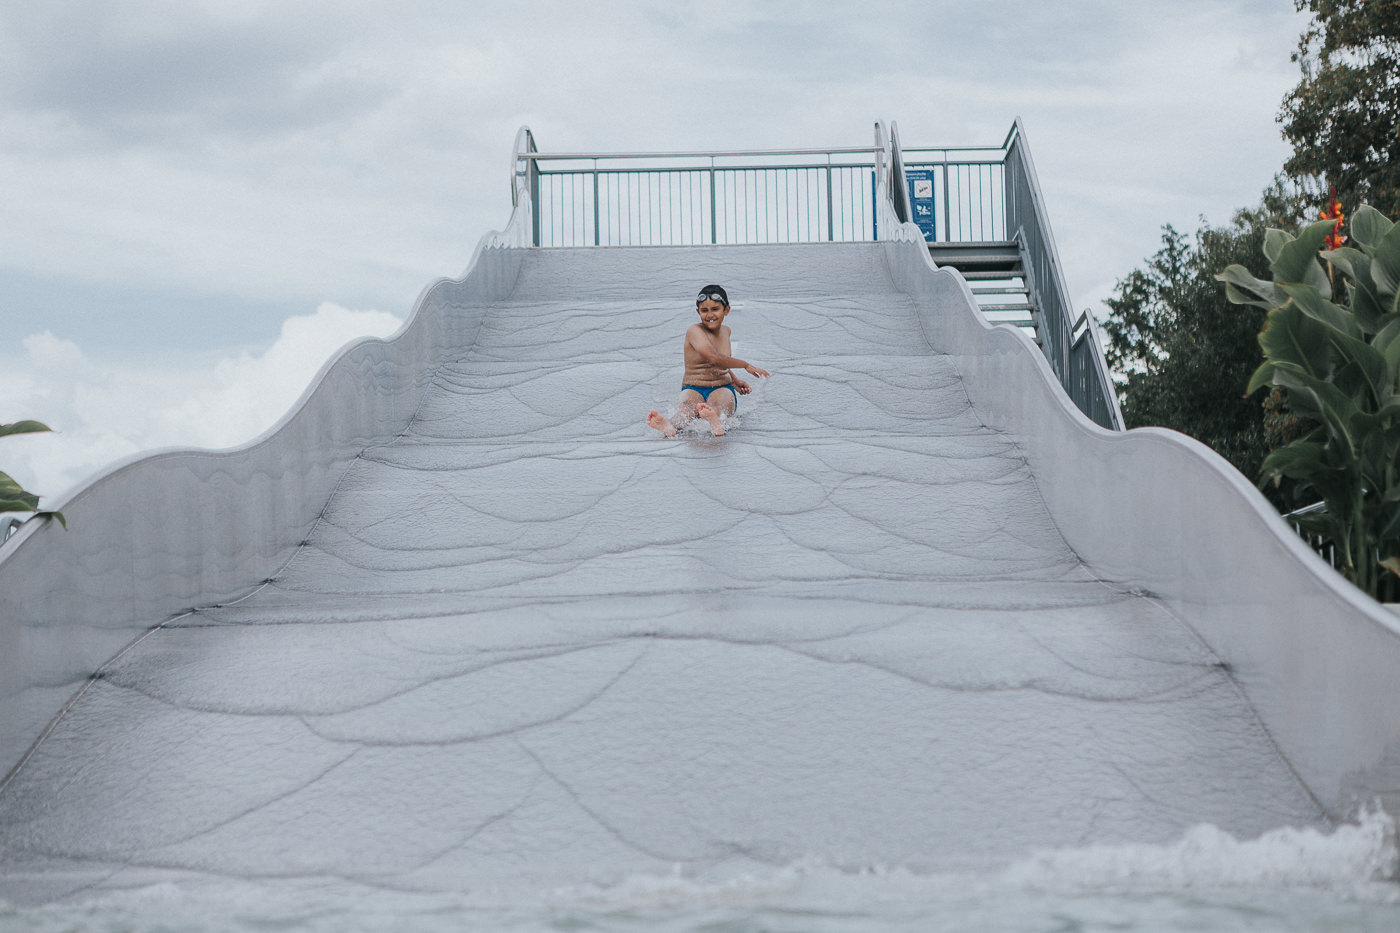 giant water slide